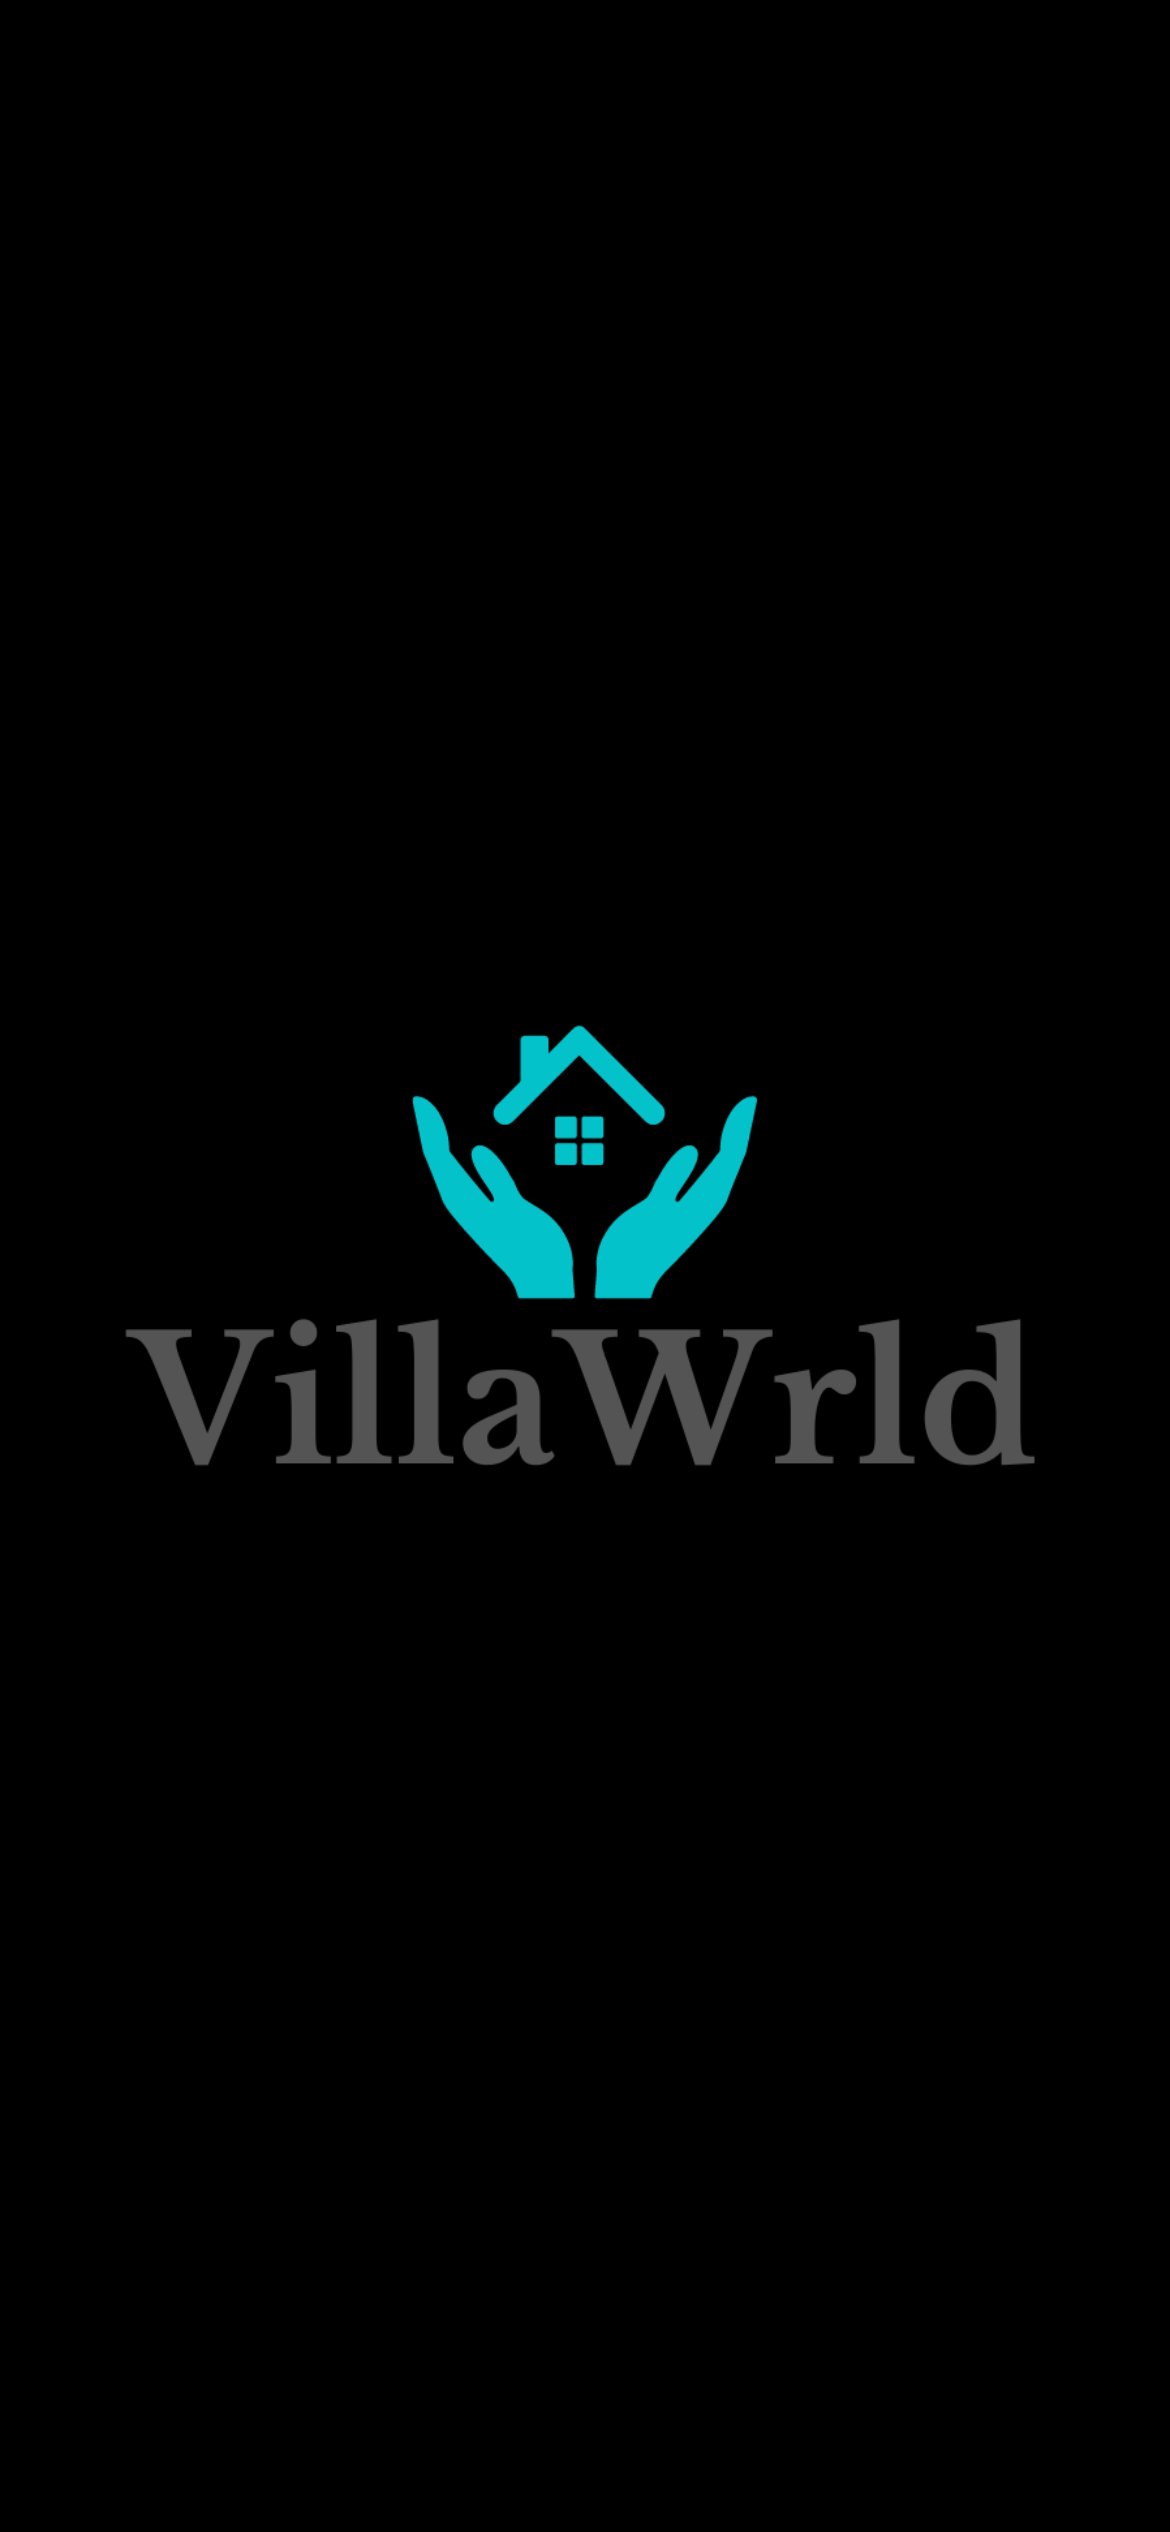 VillaWrld